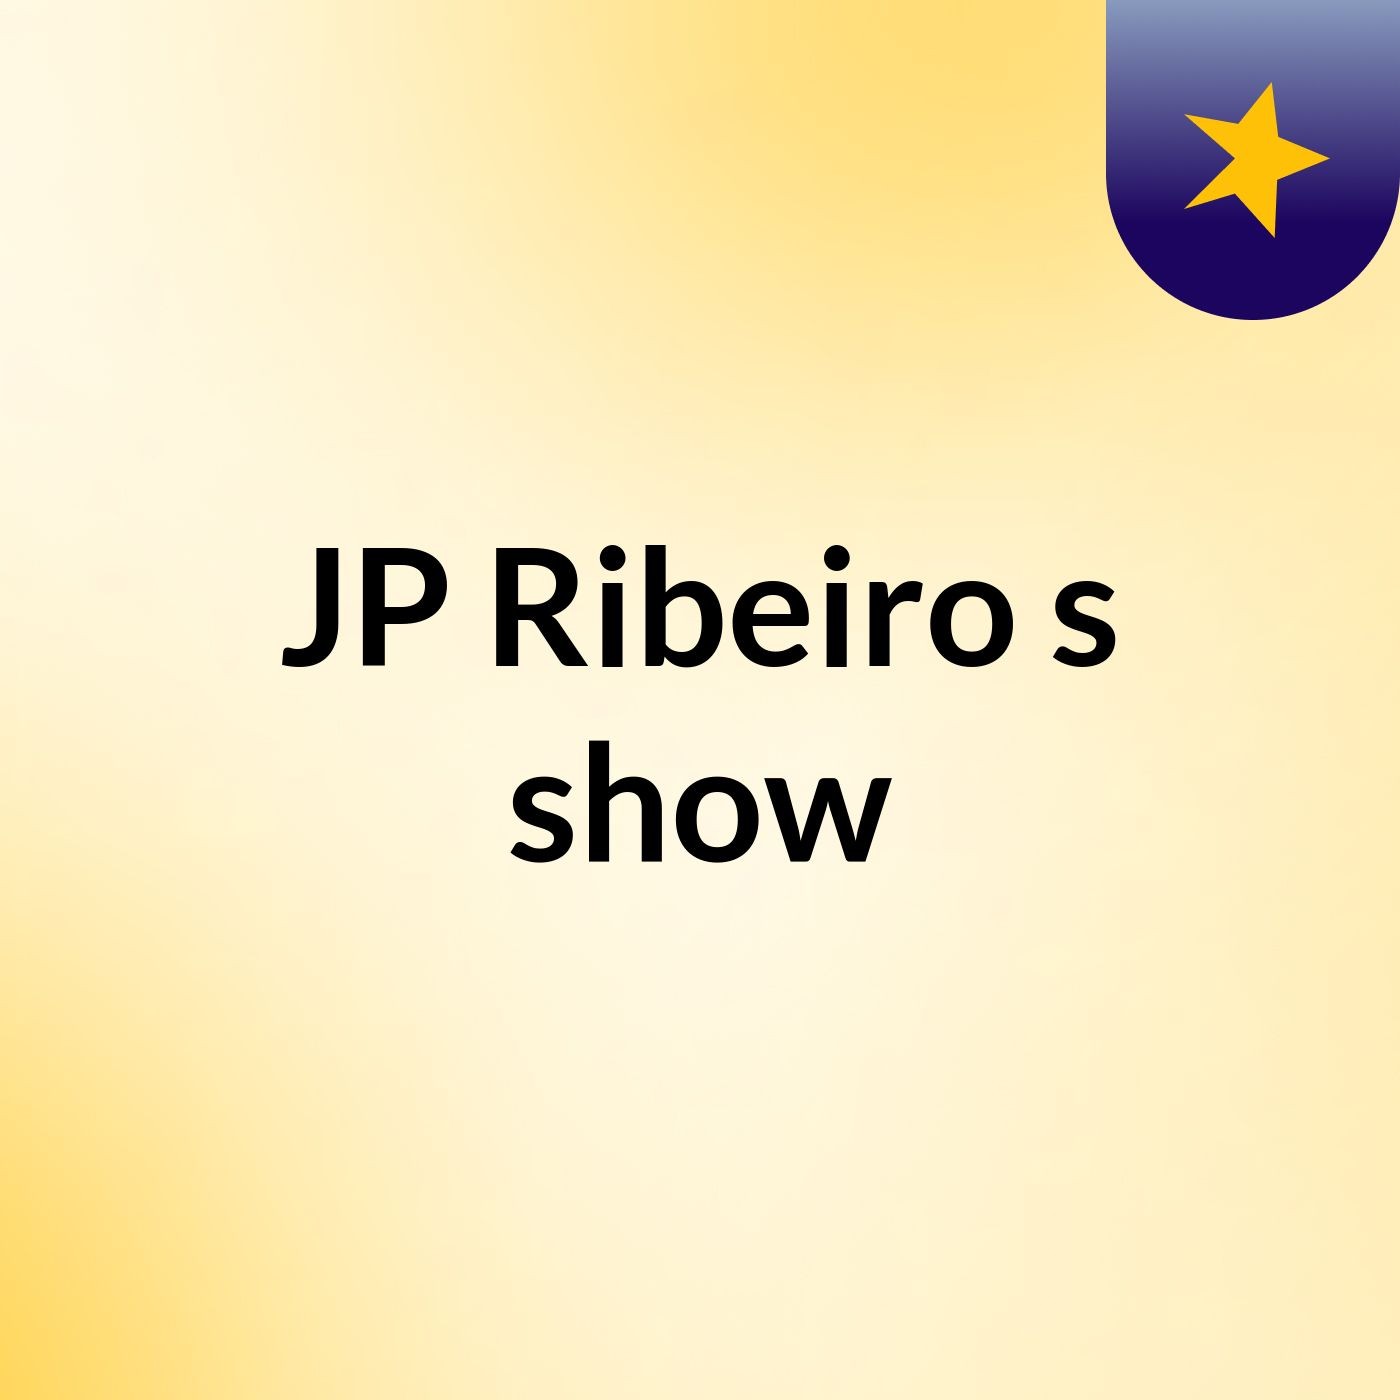 JP Ribeiro's show